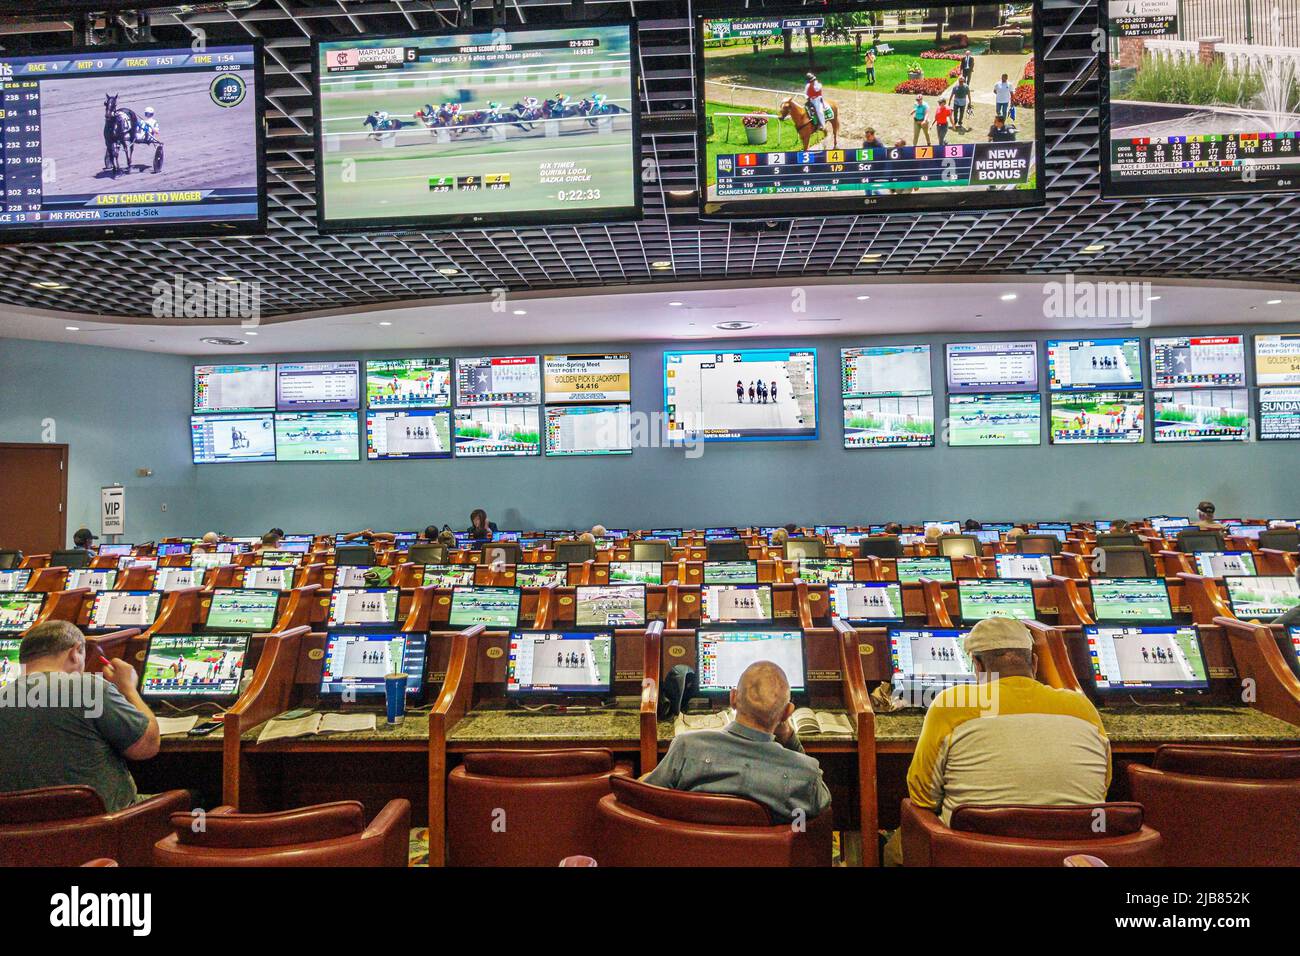 Hallandale Florida Miami, hipódromo Gulfstream Park pista de carreras de caballos pura sangre, interior de pantallas de vídeo bettors jugadores hombres Foto de stock